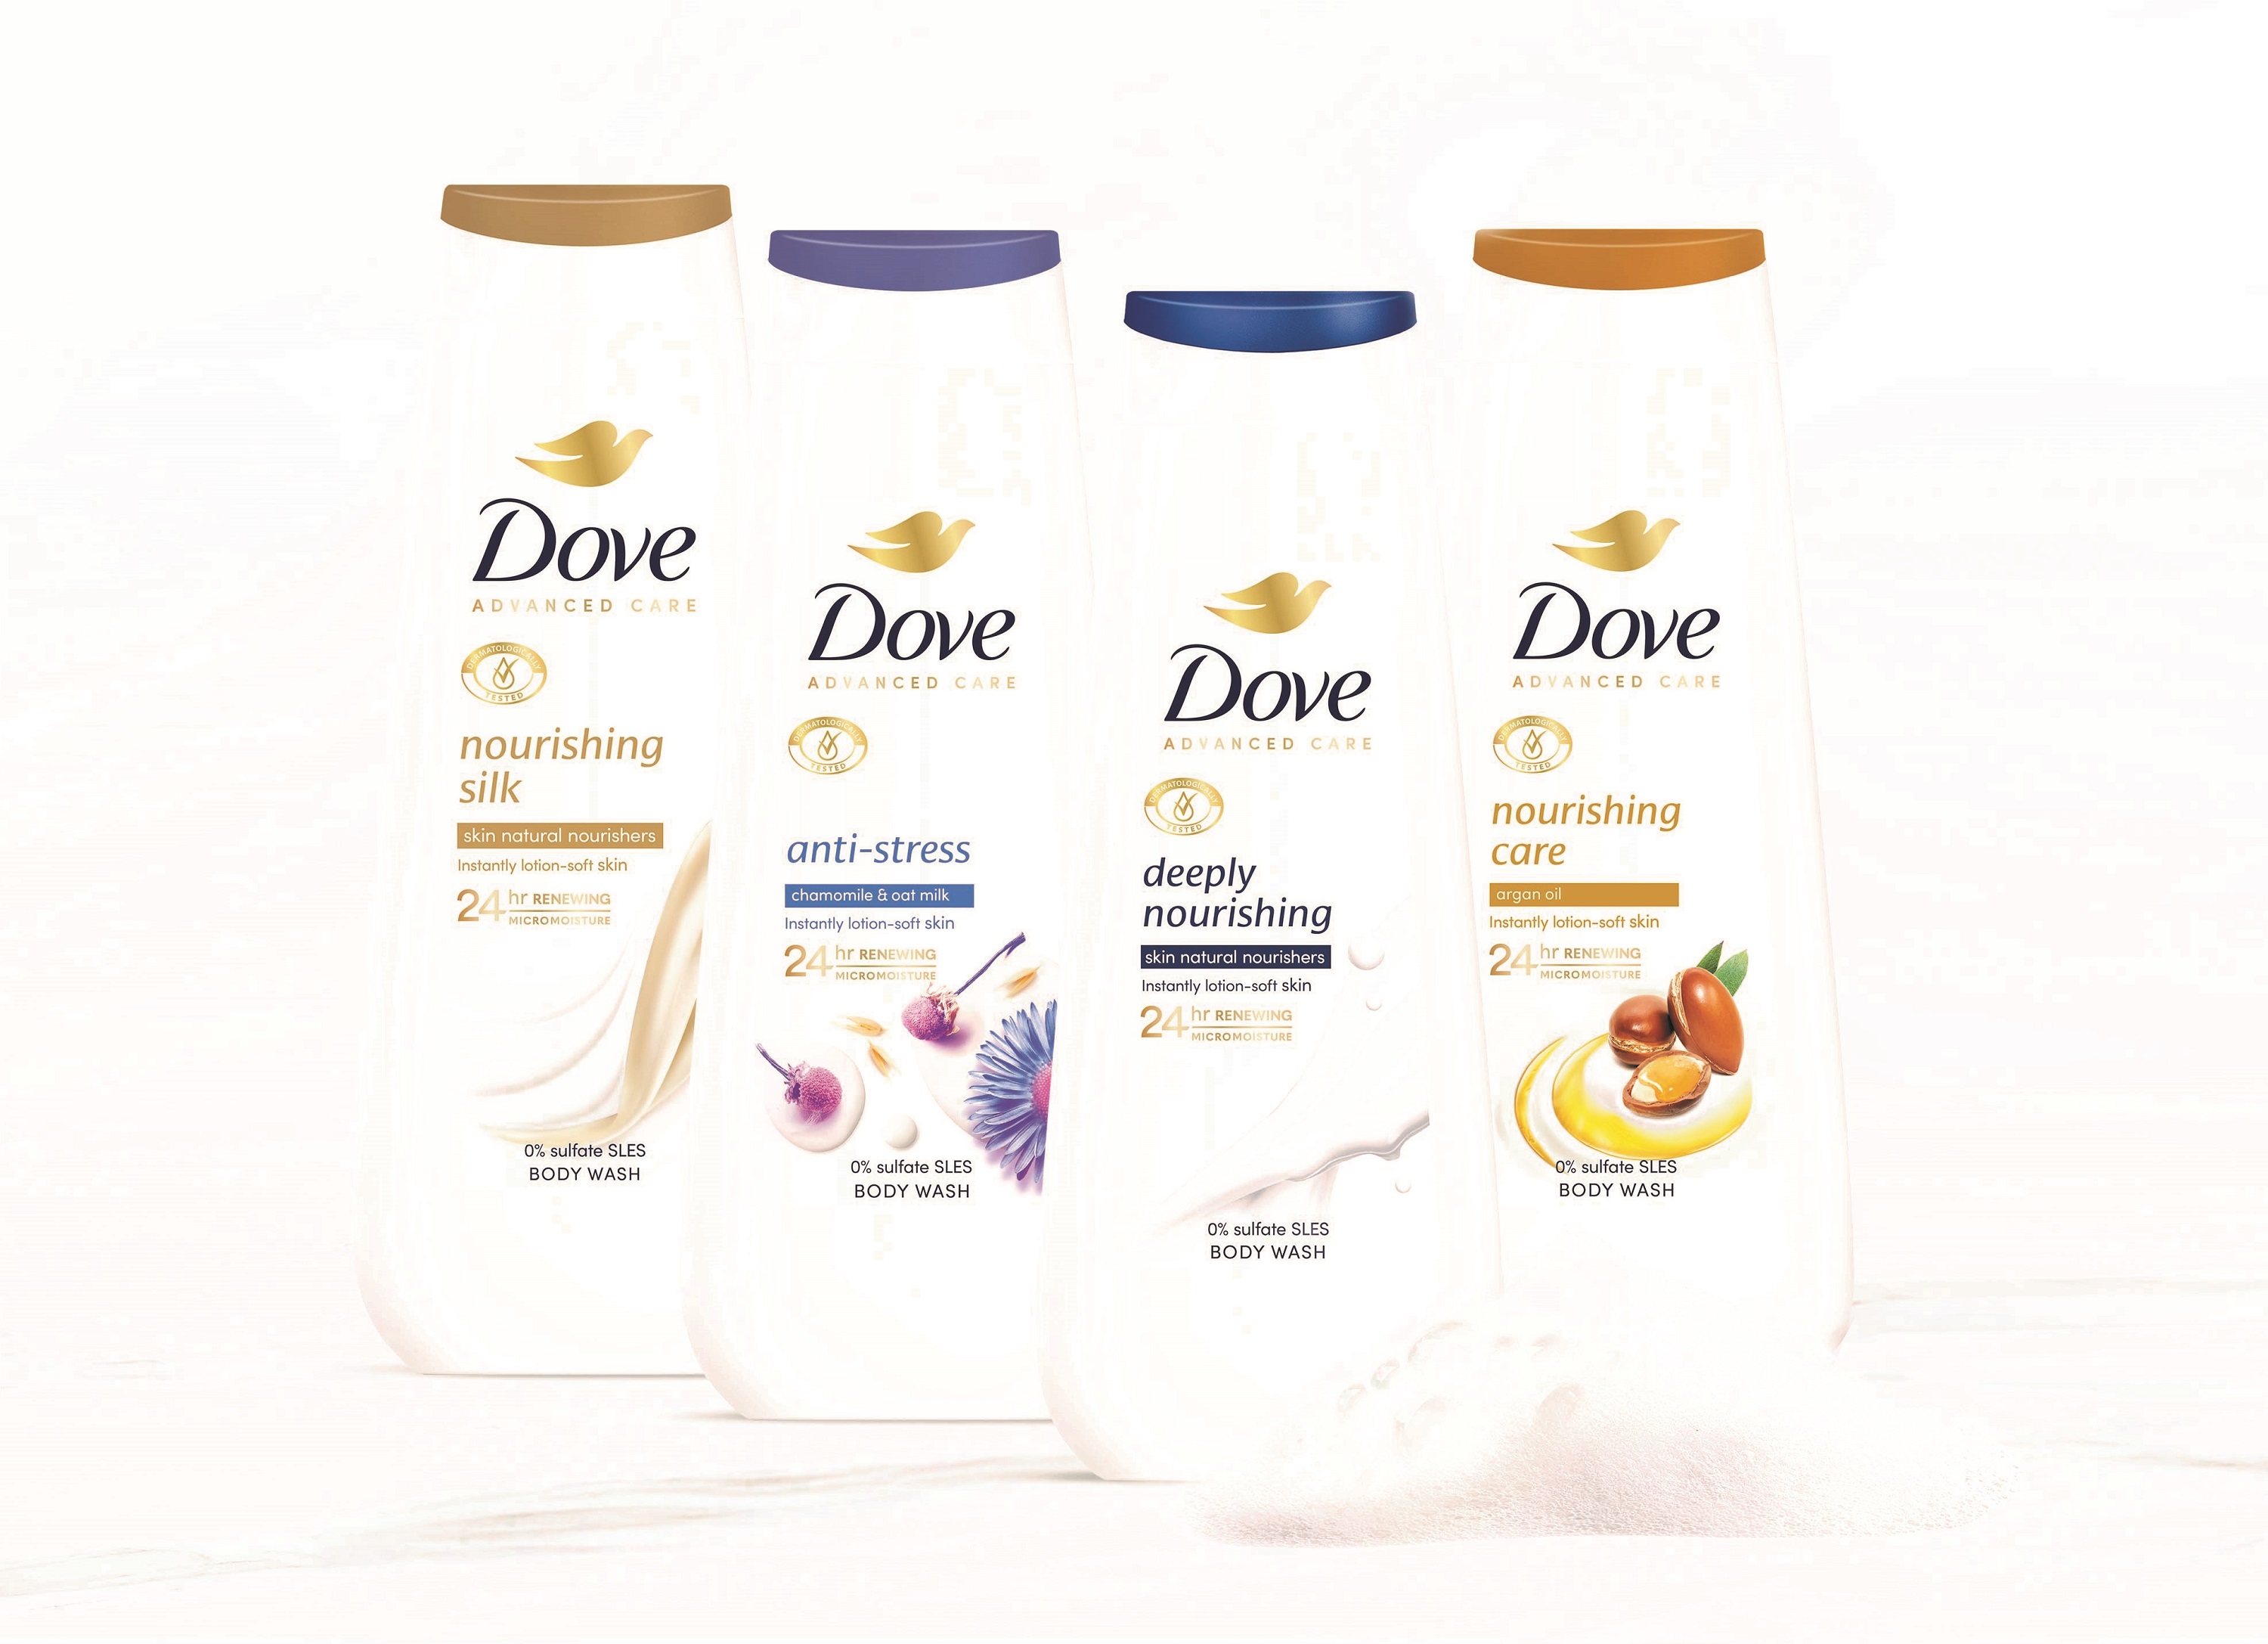 Νέα σειρά αφρόλουτρων Dove Advanced Care: 4ωρη αίσθηση ενυδάτωσης απευθείας από το ντους!